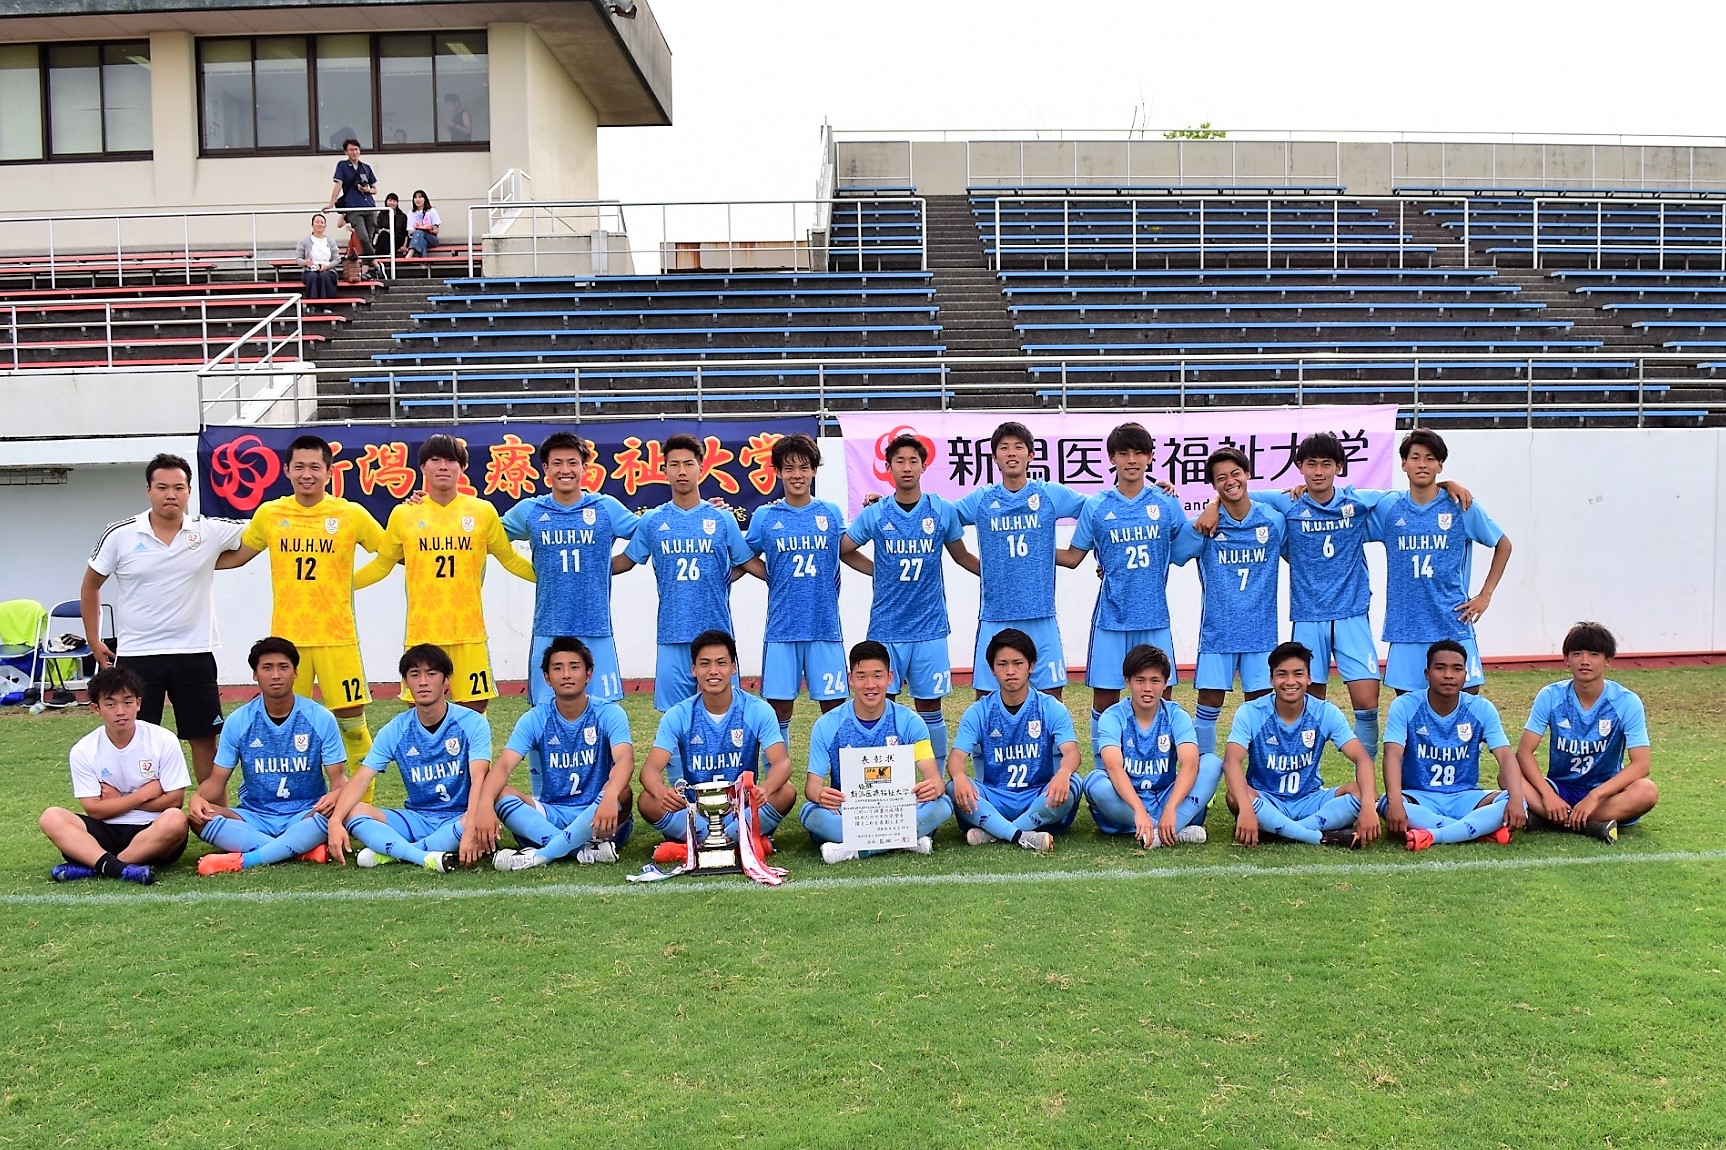 新潟医療福祉大学 男子サッカー部 昨年の悔しさを胸に 総理大臣杯日本大学サッカートーナメントに出場 Nsgグループ